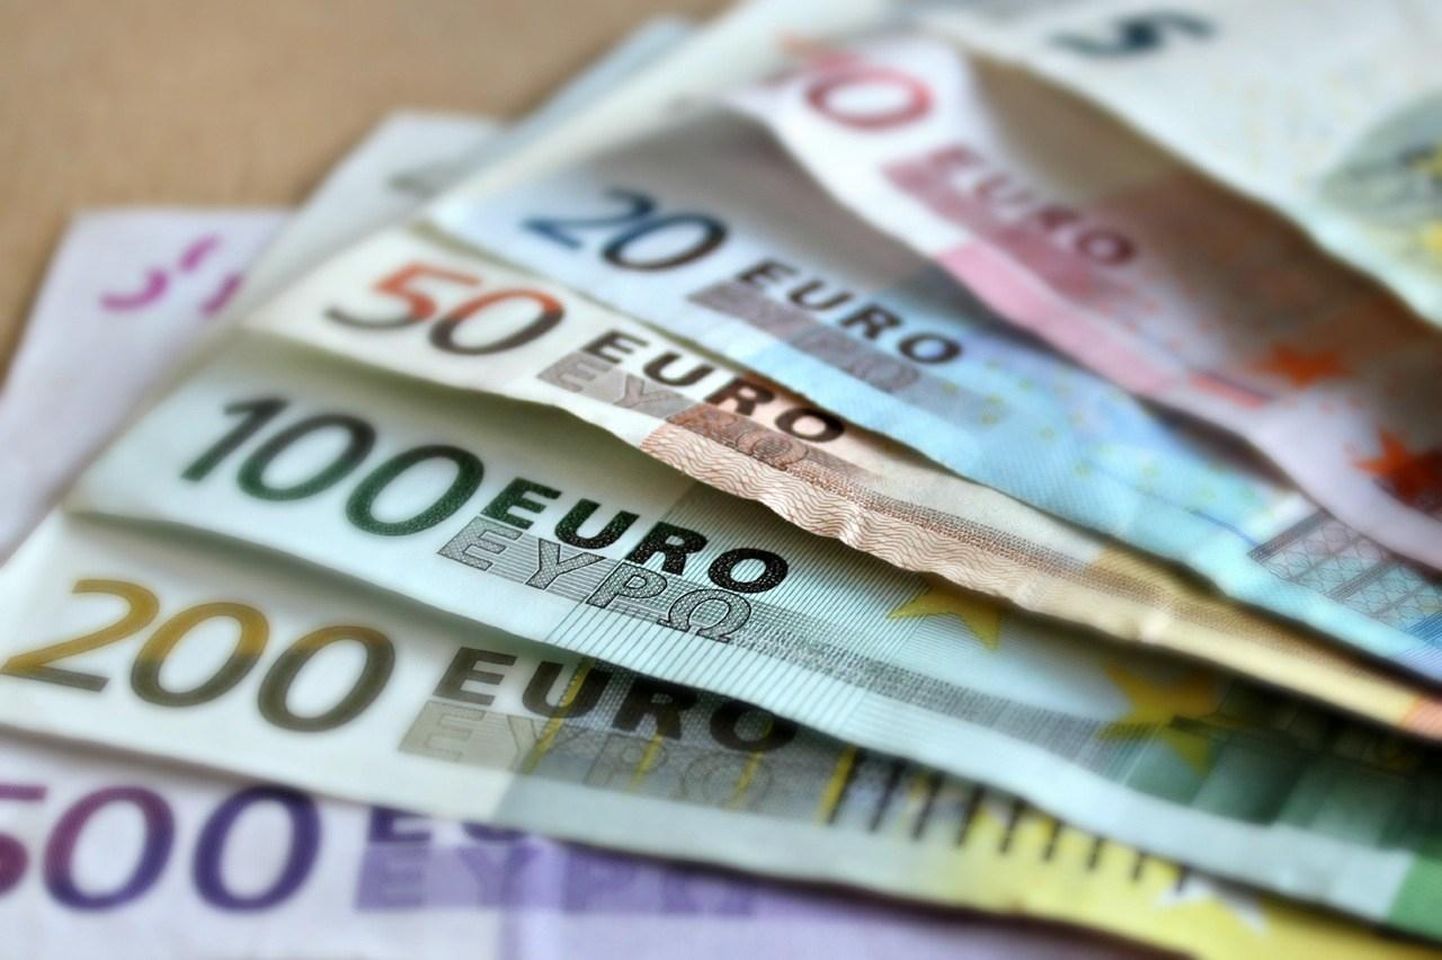 Eesti võtab 120 miljonit laenu.